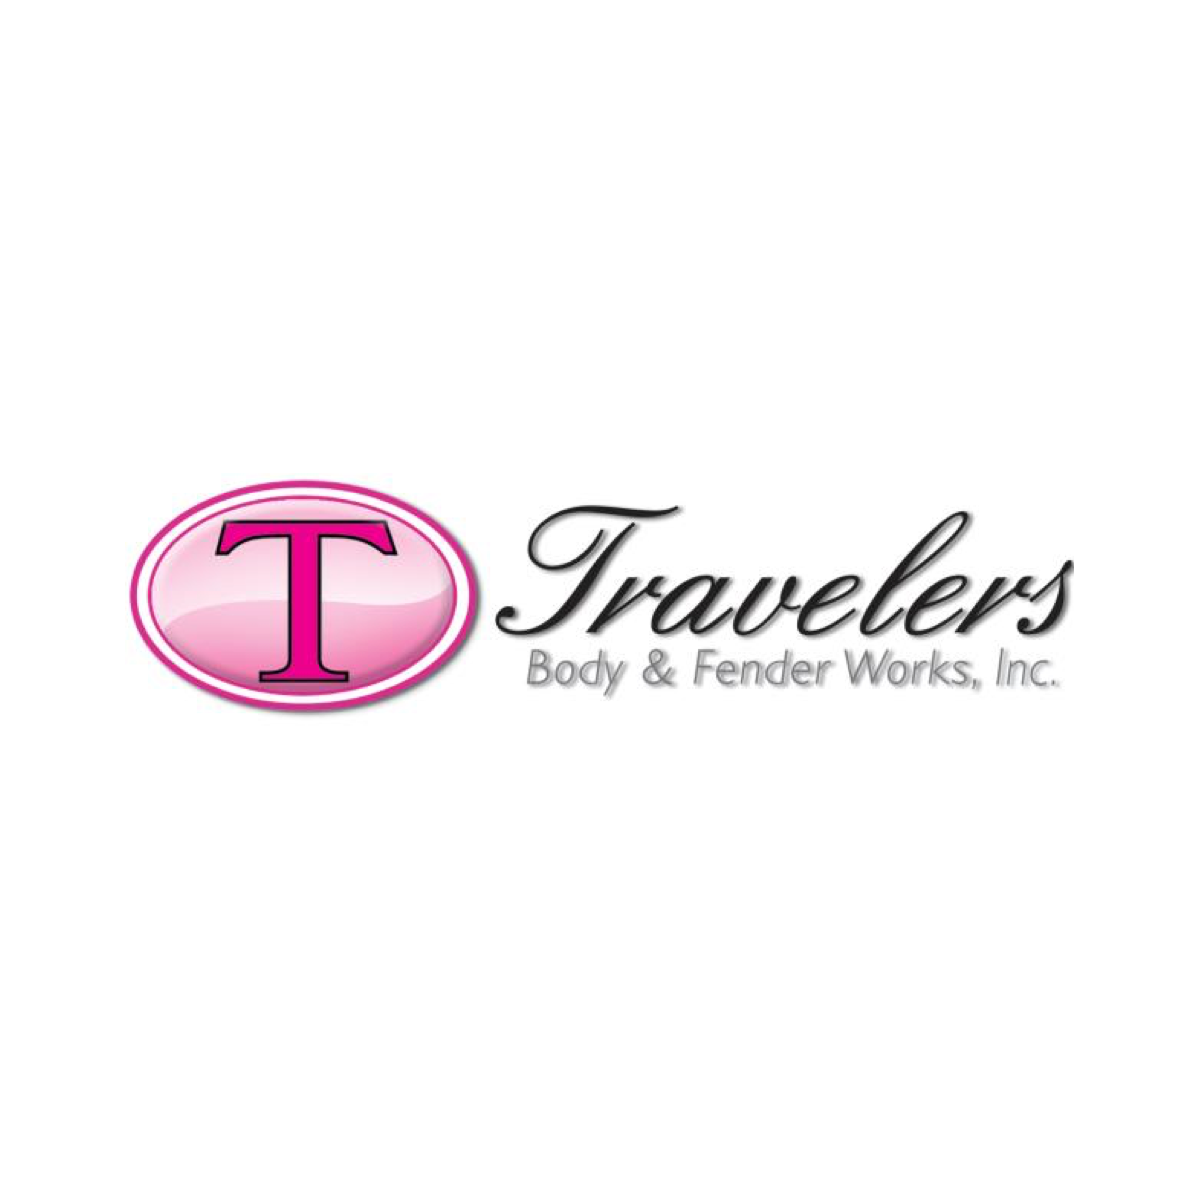 Travelers Body & Fender Works